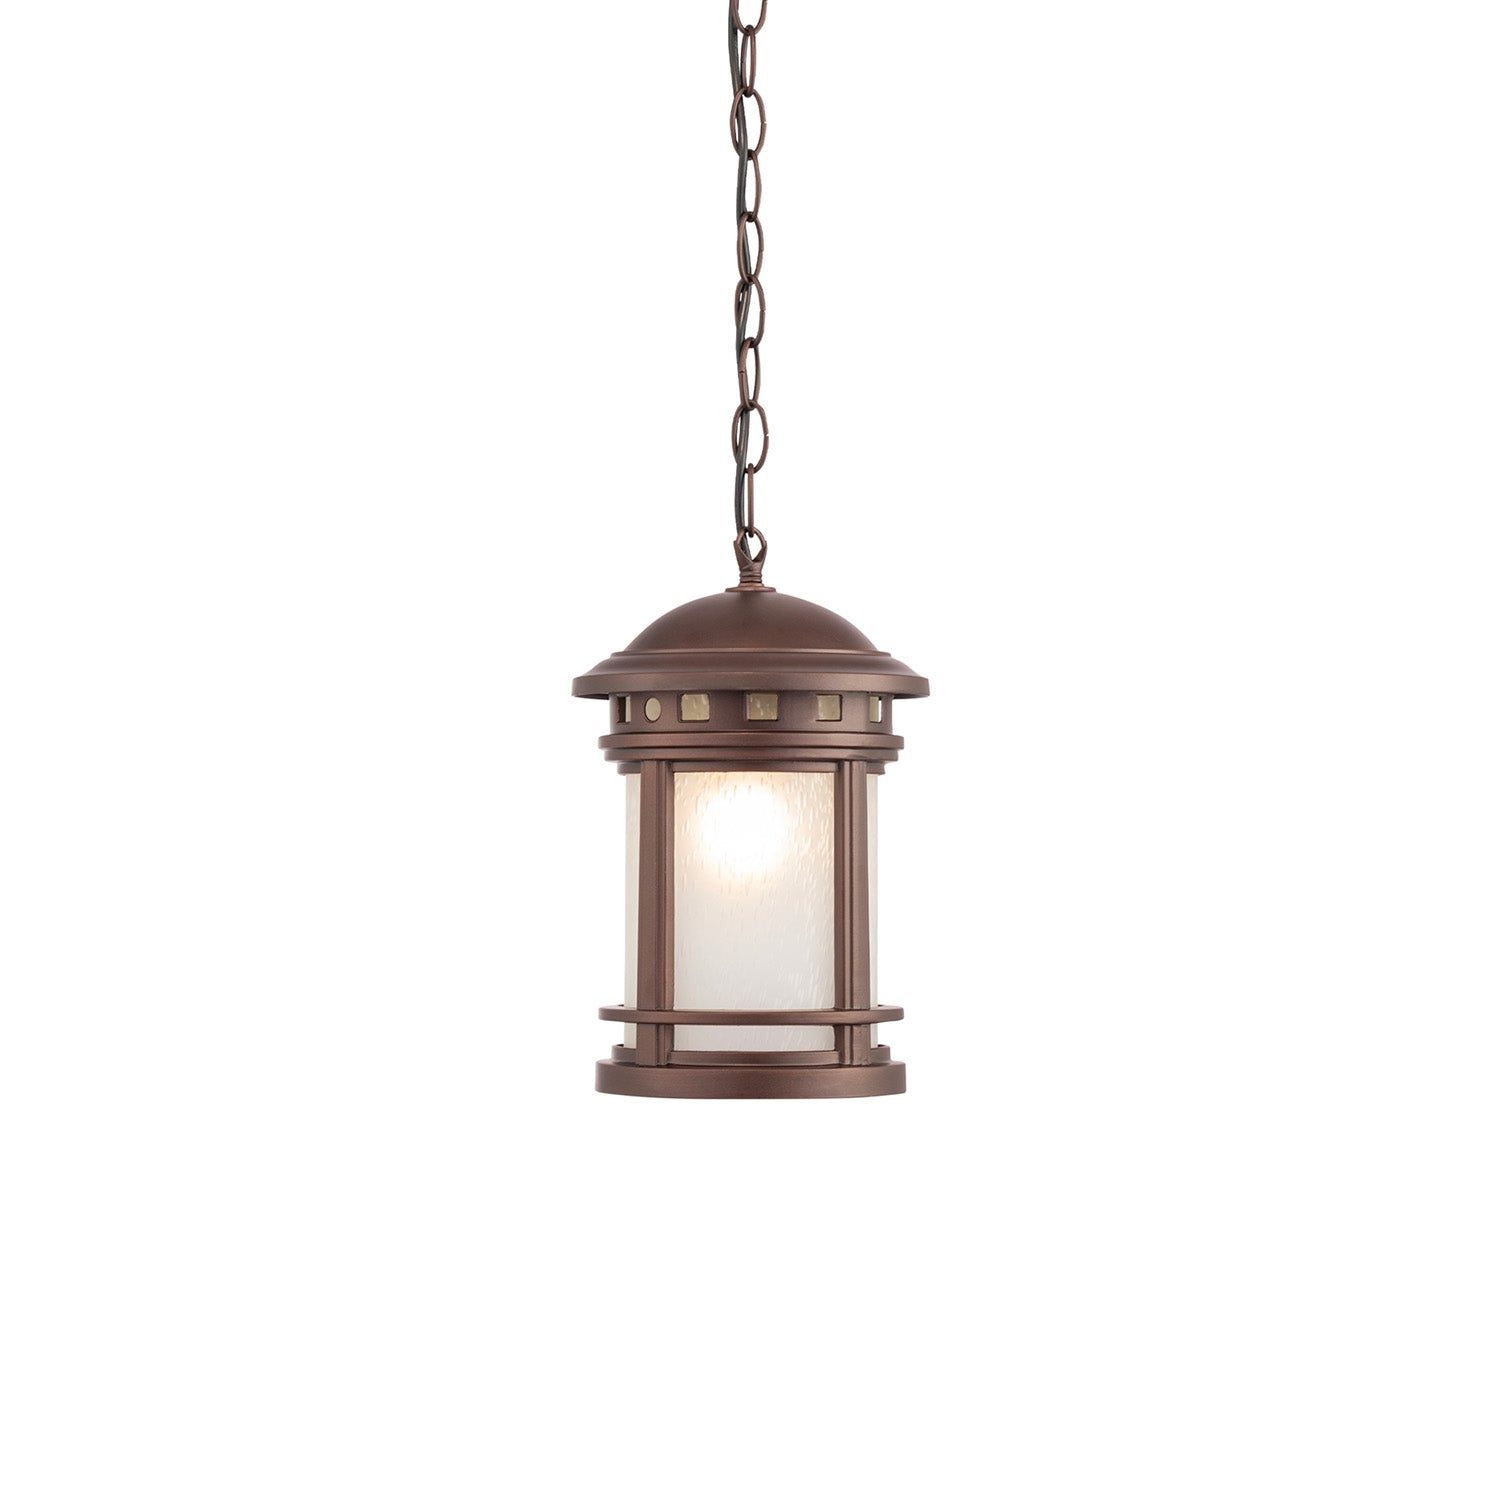 SALAMANCA - Suspension d'extérieur lanterne vintage antique